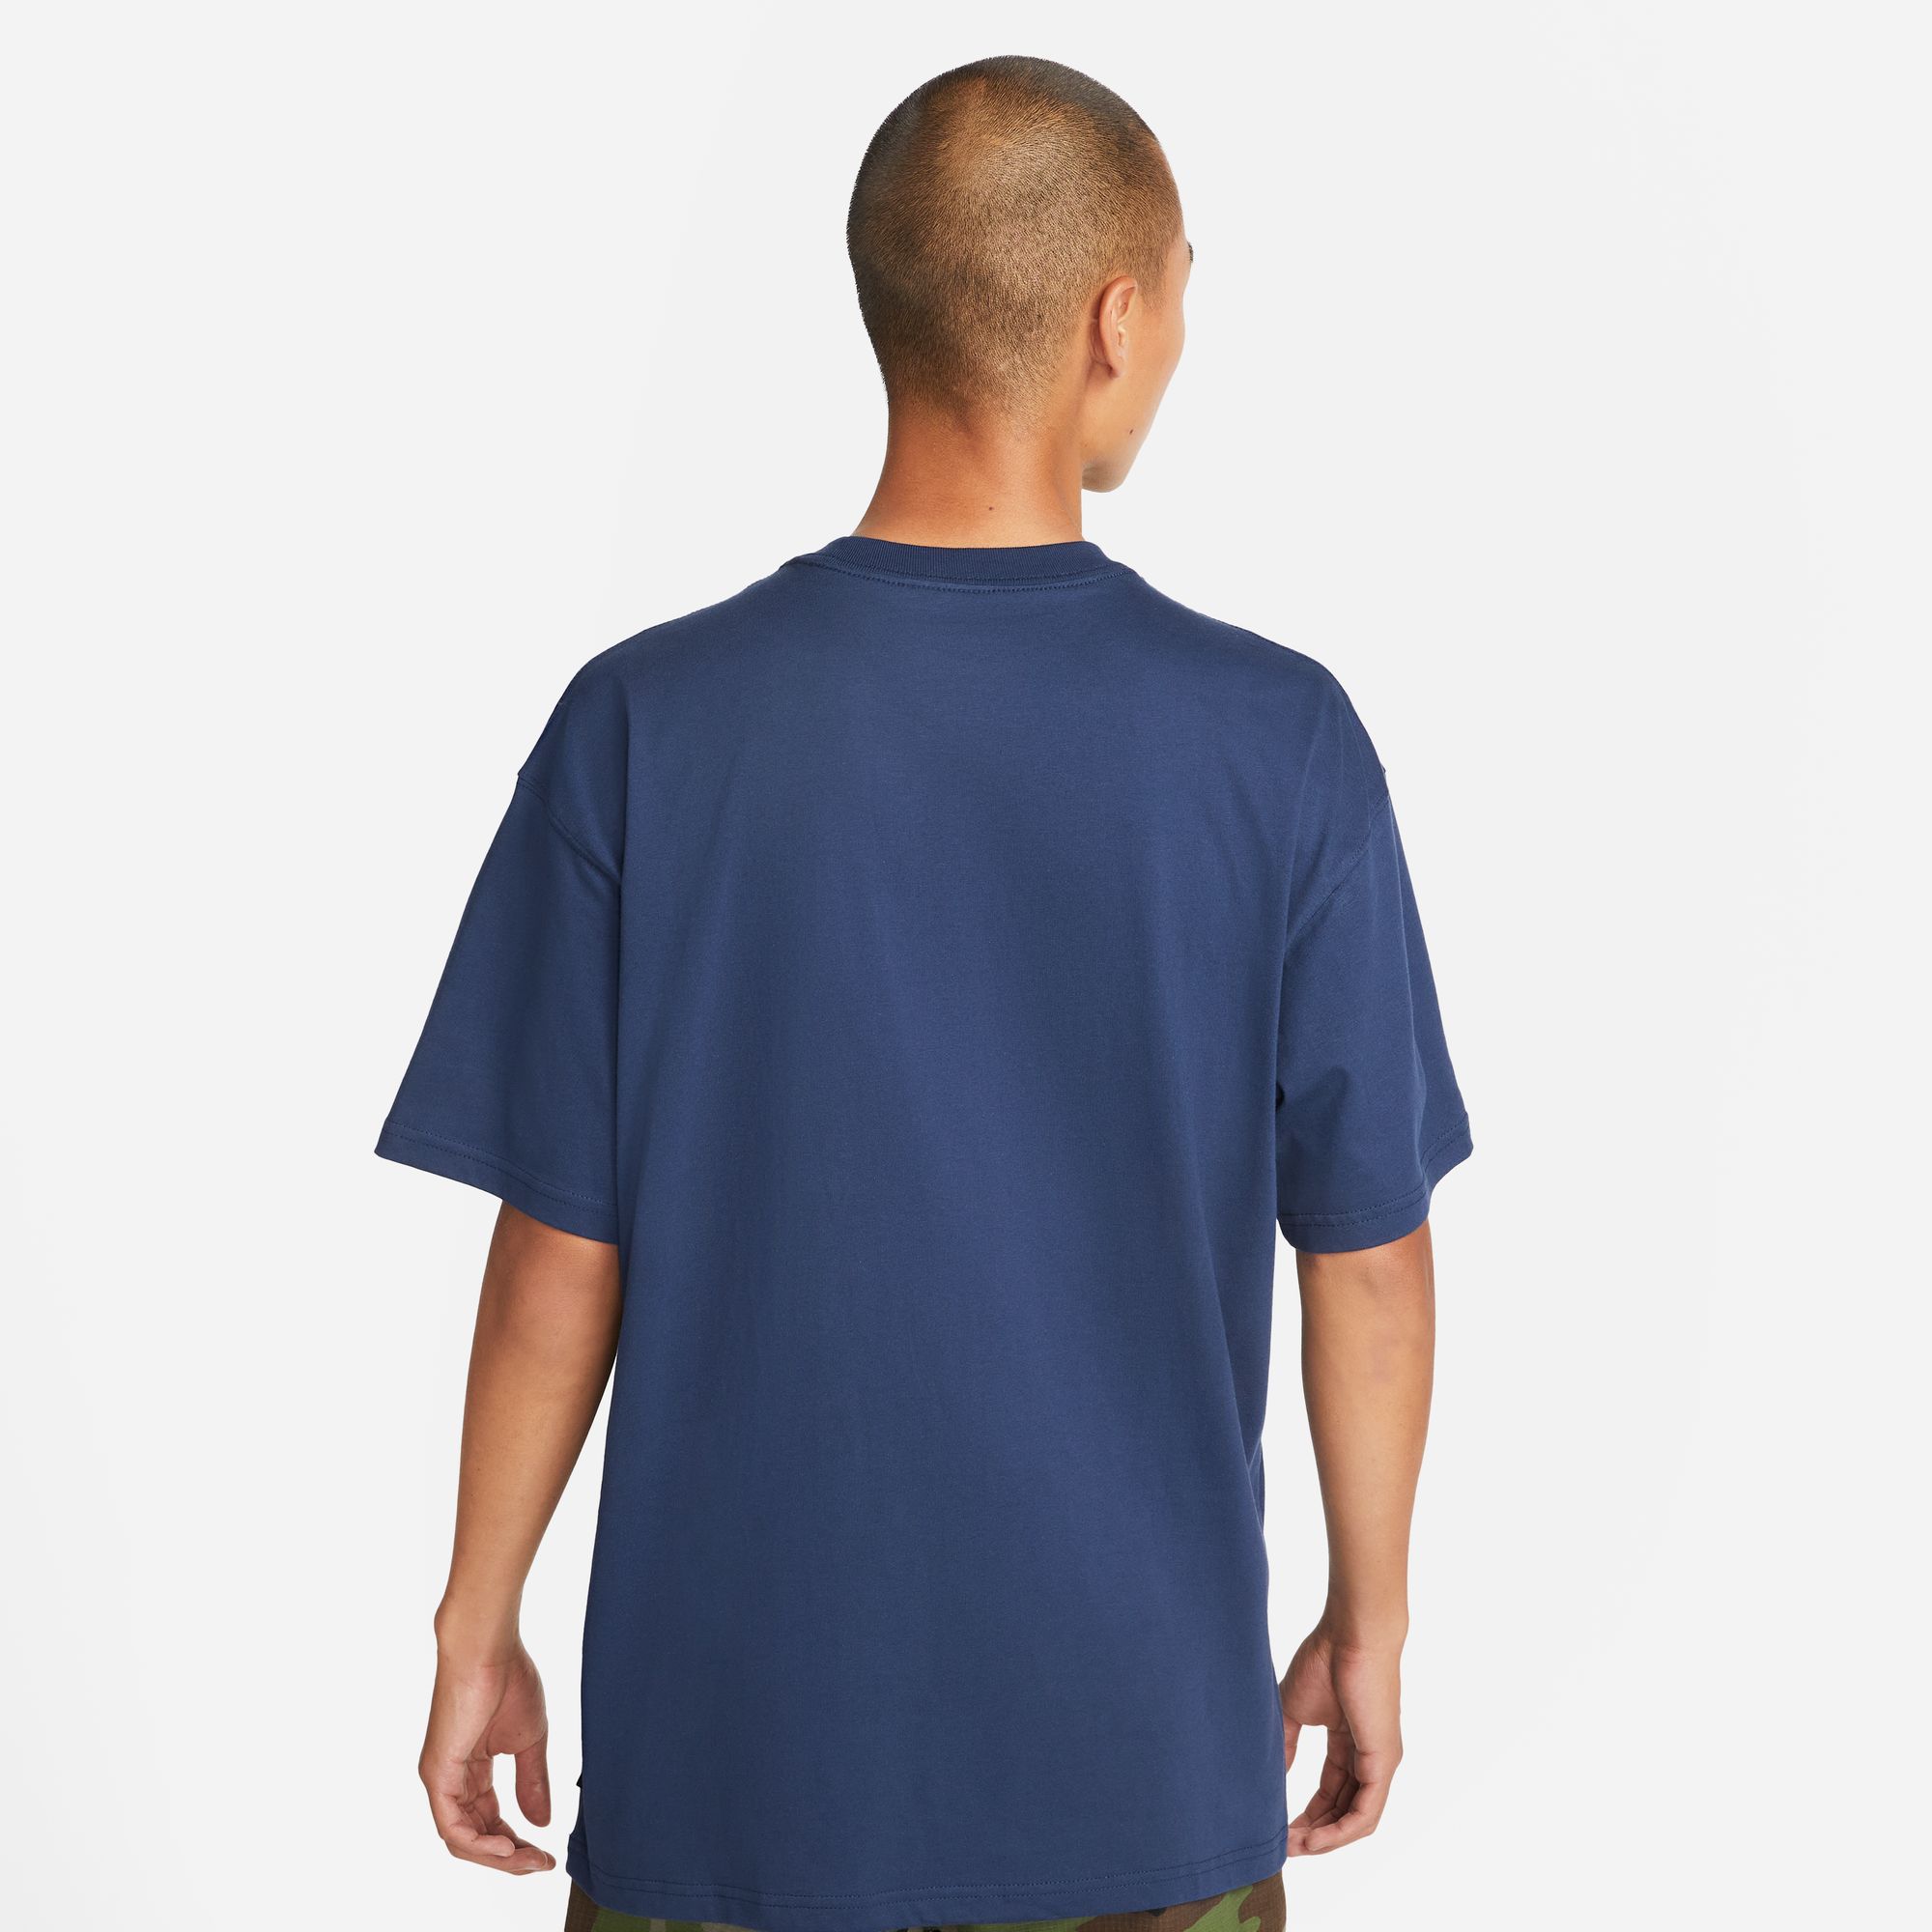 Nike SB Skate Shirt Midnight Navy 02